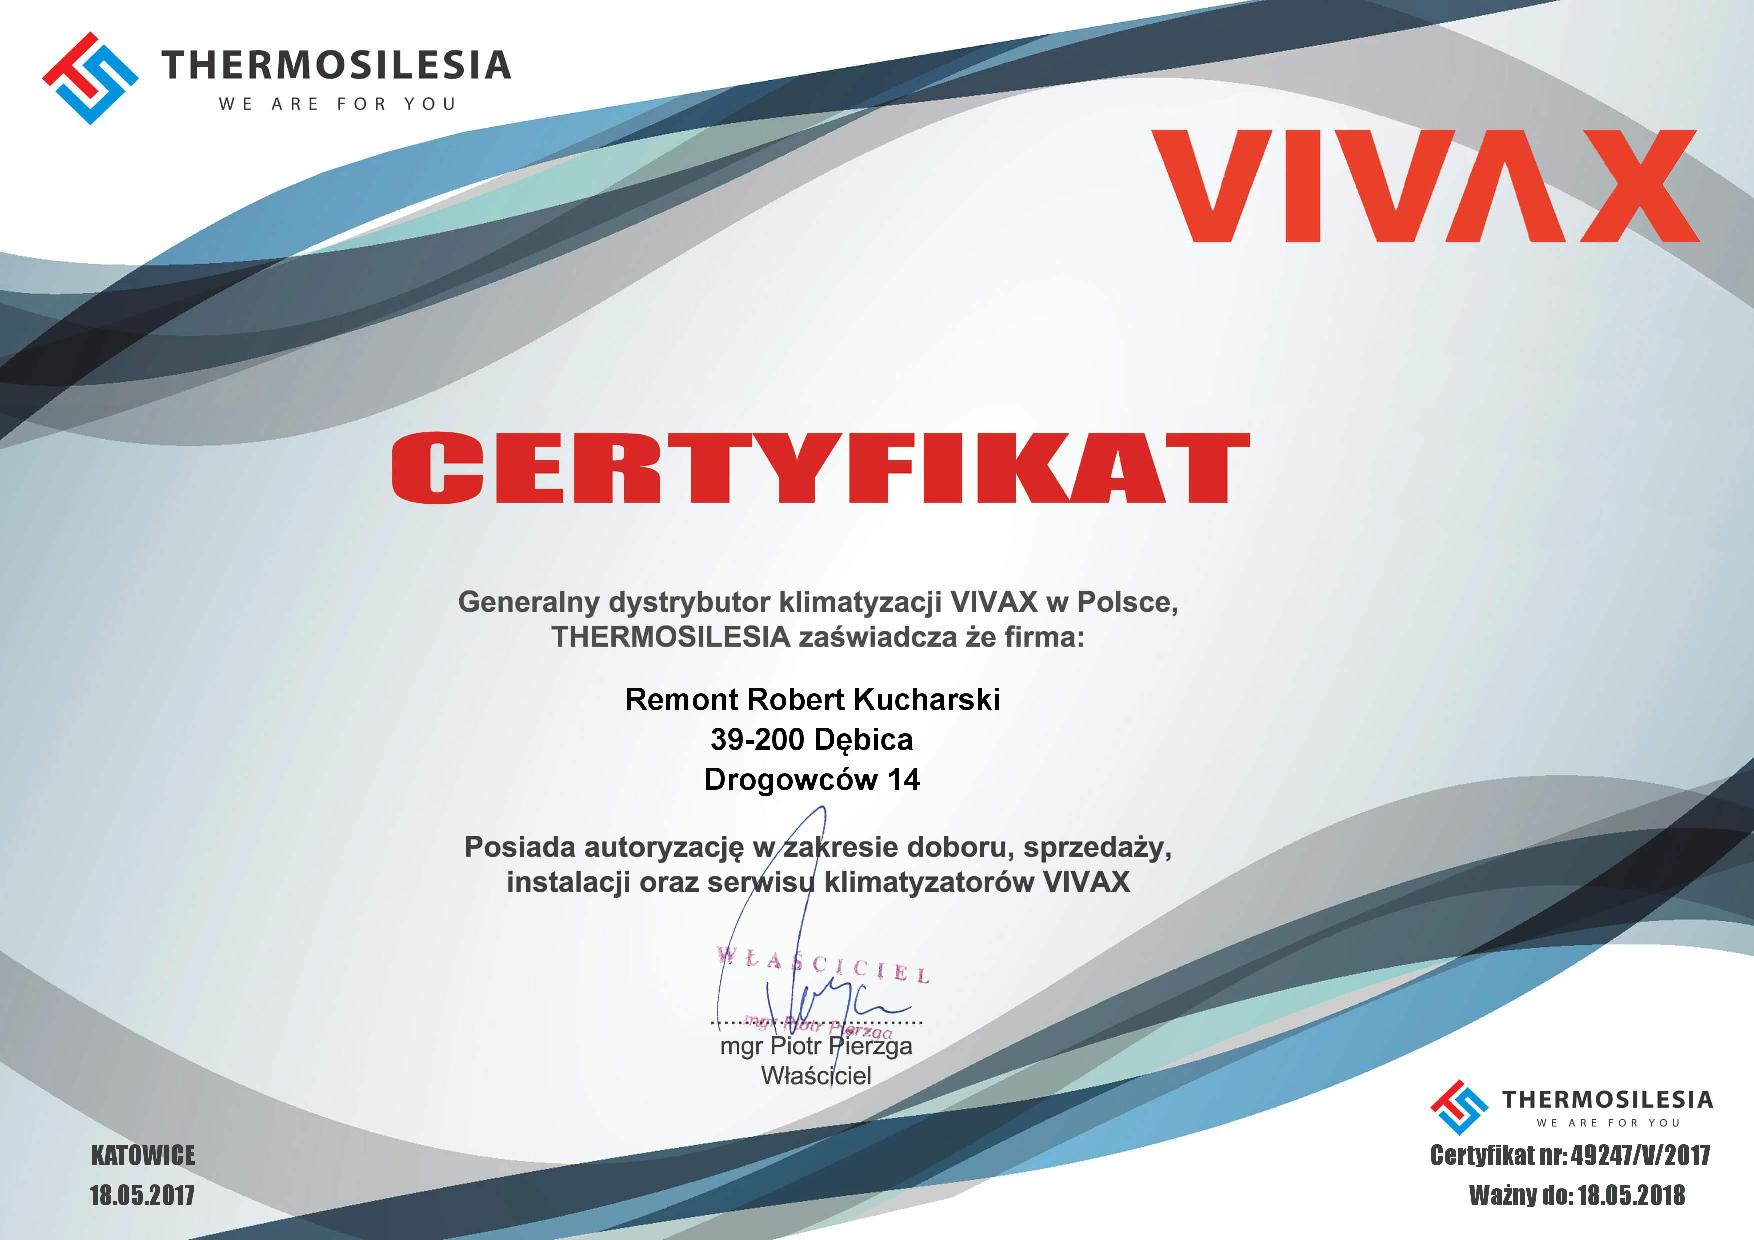 Certyfikat autoryzowanego dystrybutora VIVAX - Remont Robert Kucharski